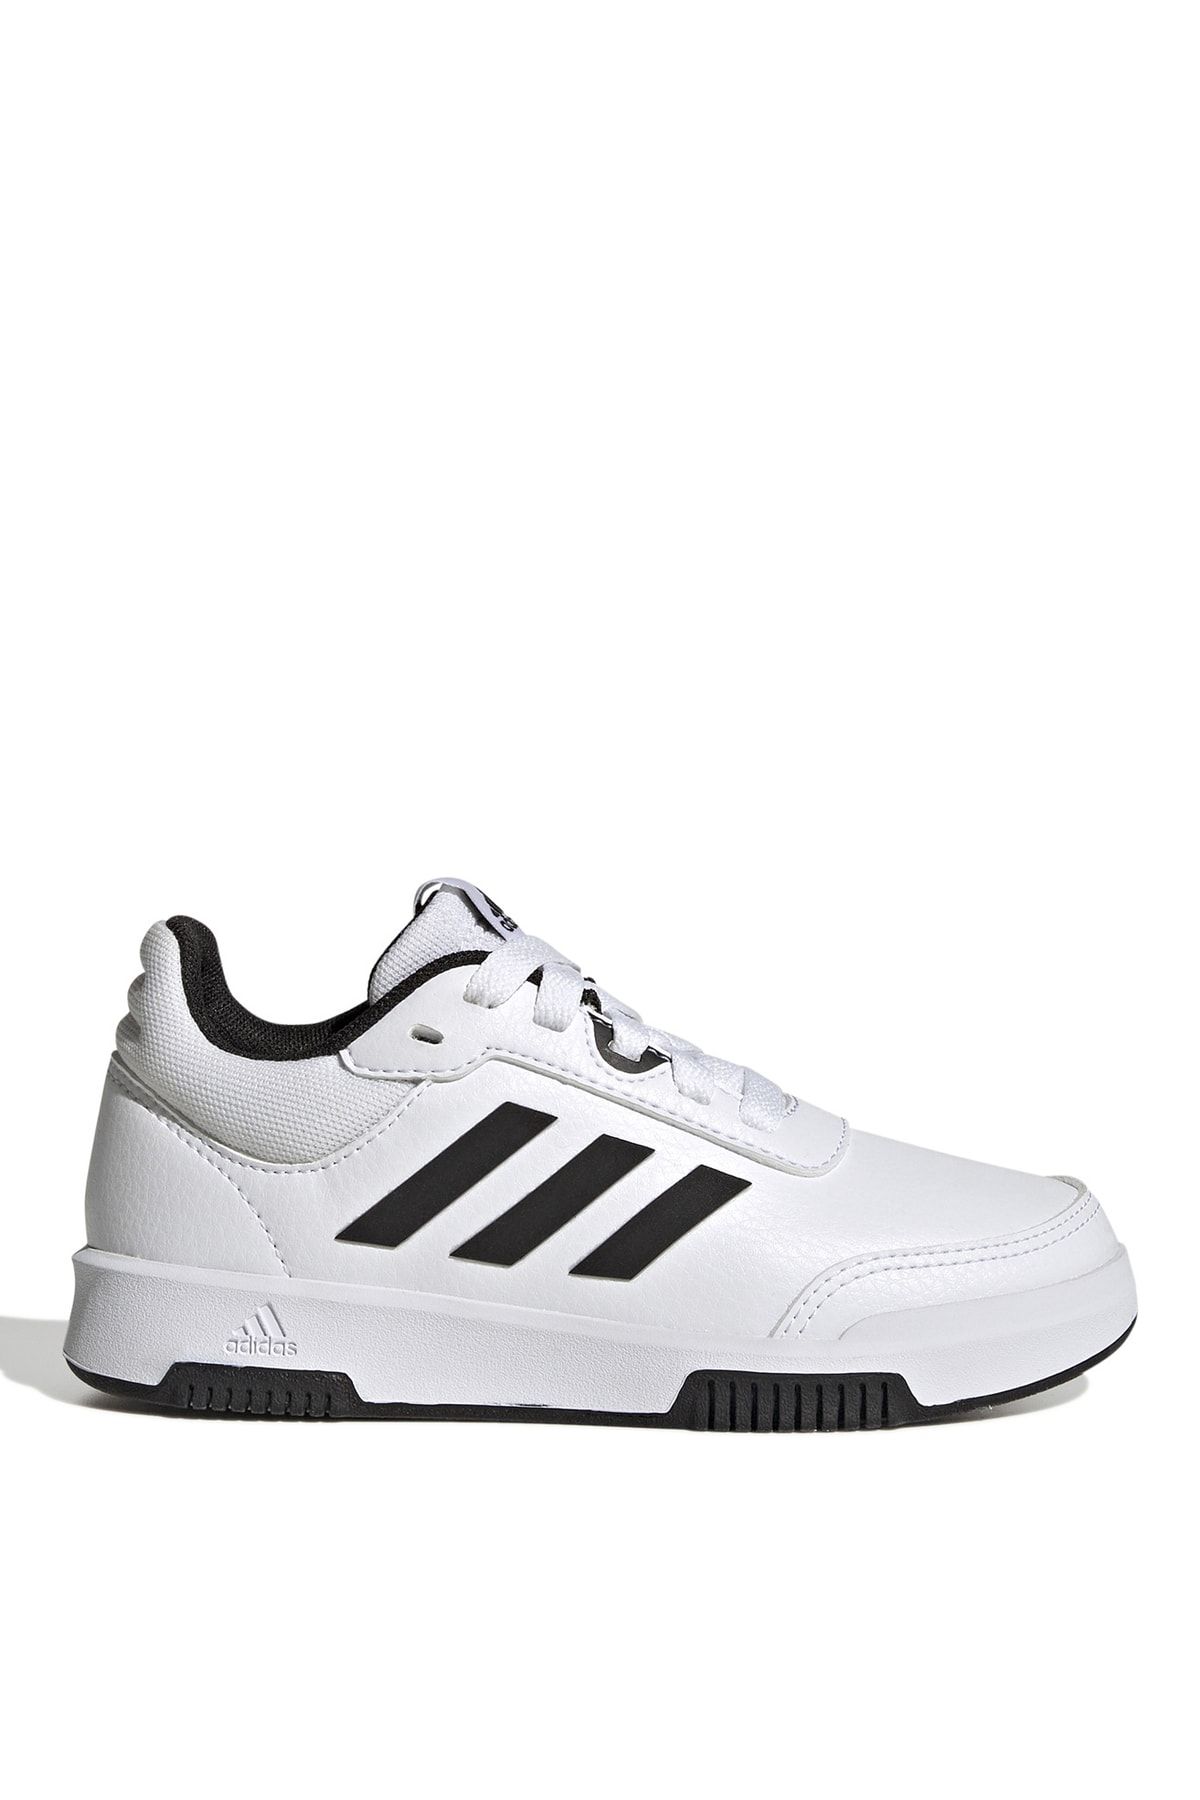 adidas Beyaz - Siyah Erkek Çocuk Yürüyüş Ayakkabısı Gw6422 Tensaur Sport 2.0 K